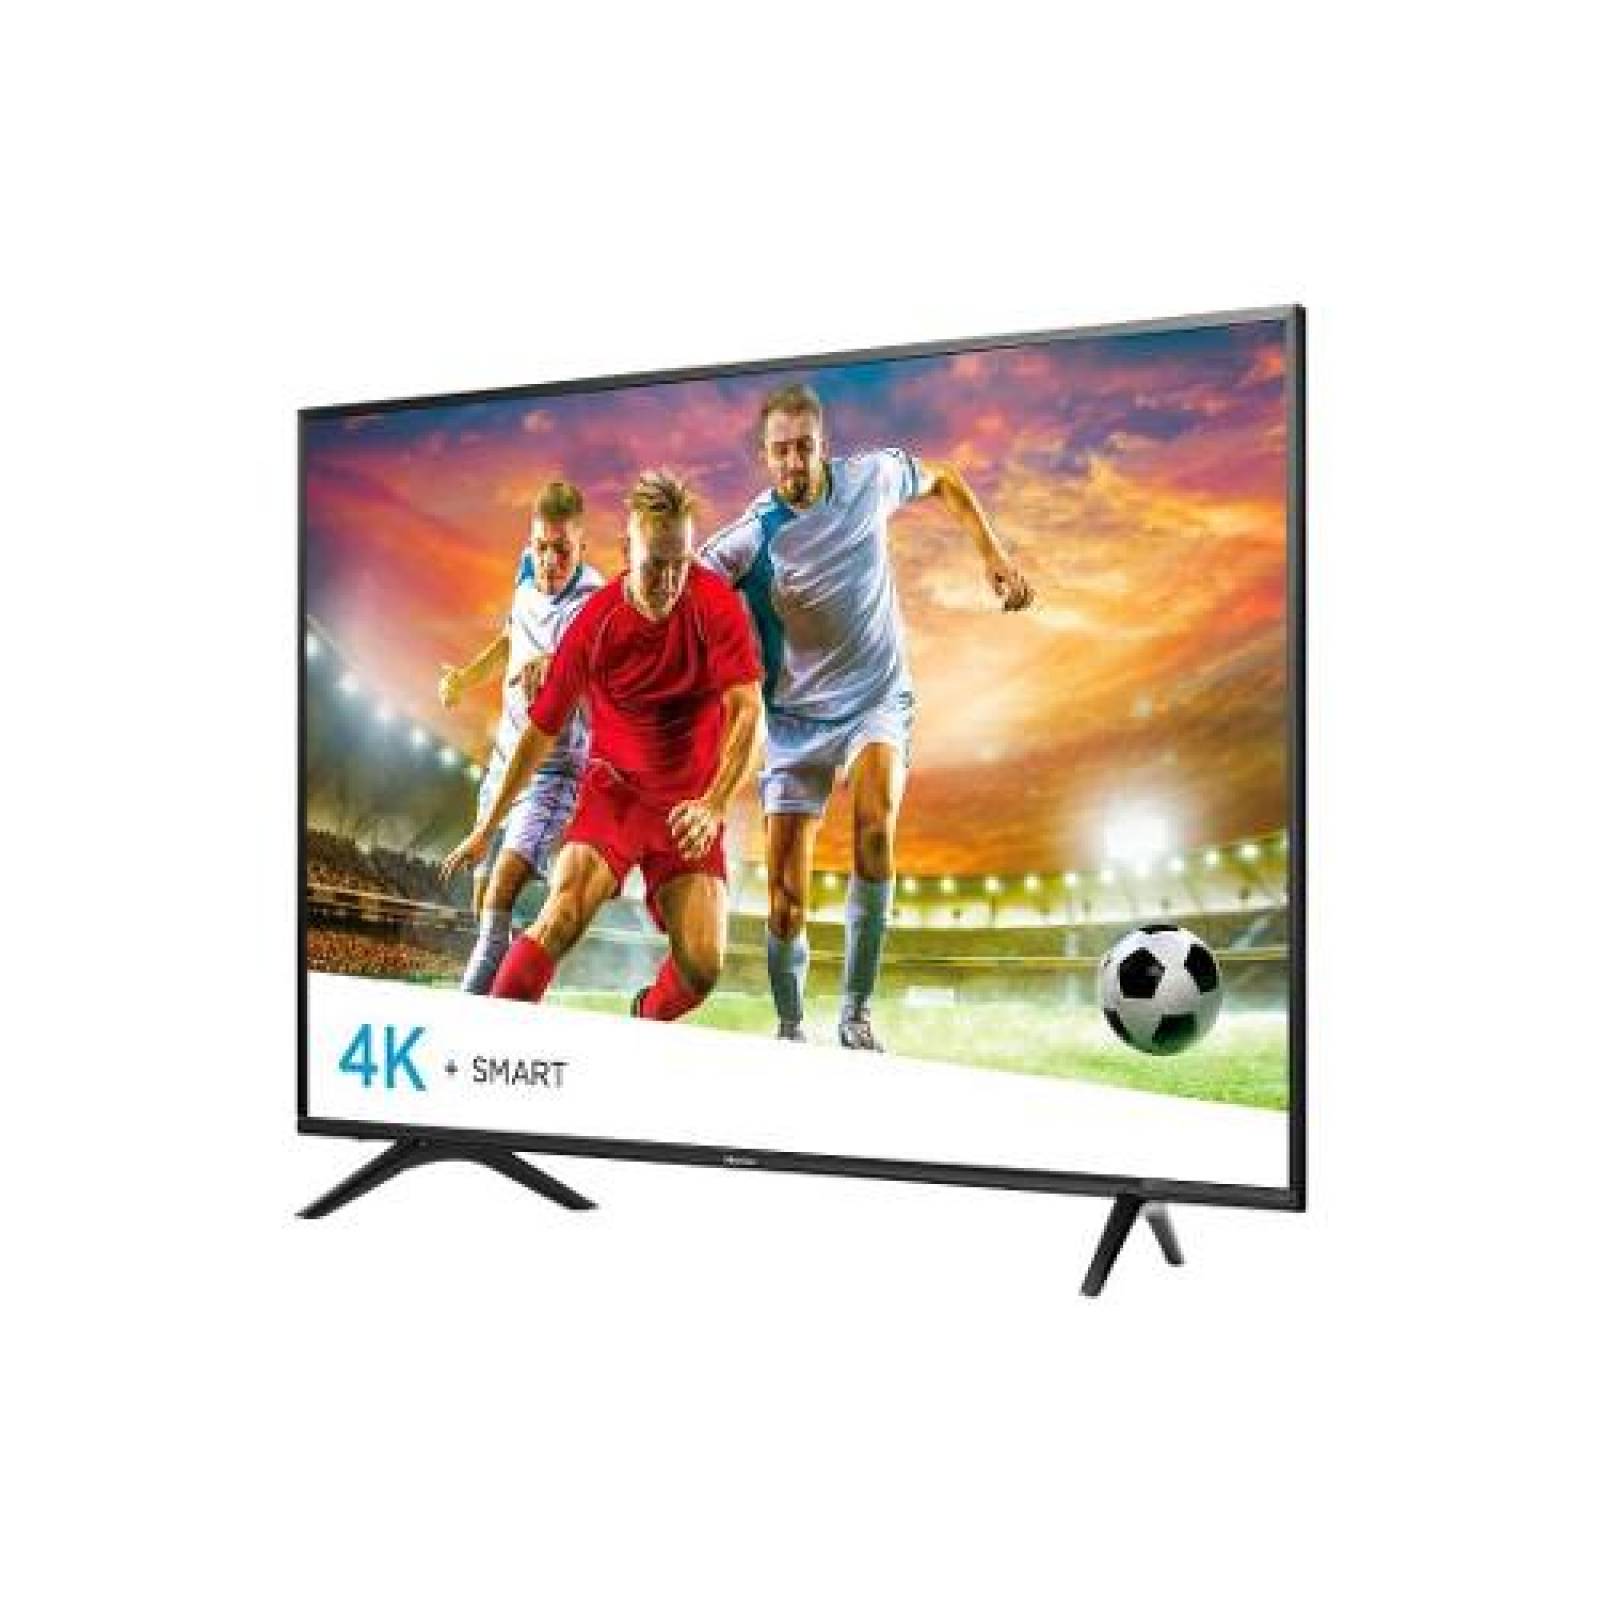 TV HISENSE 43 LED 4K 3840 X 2160P SMART TV